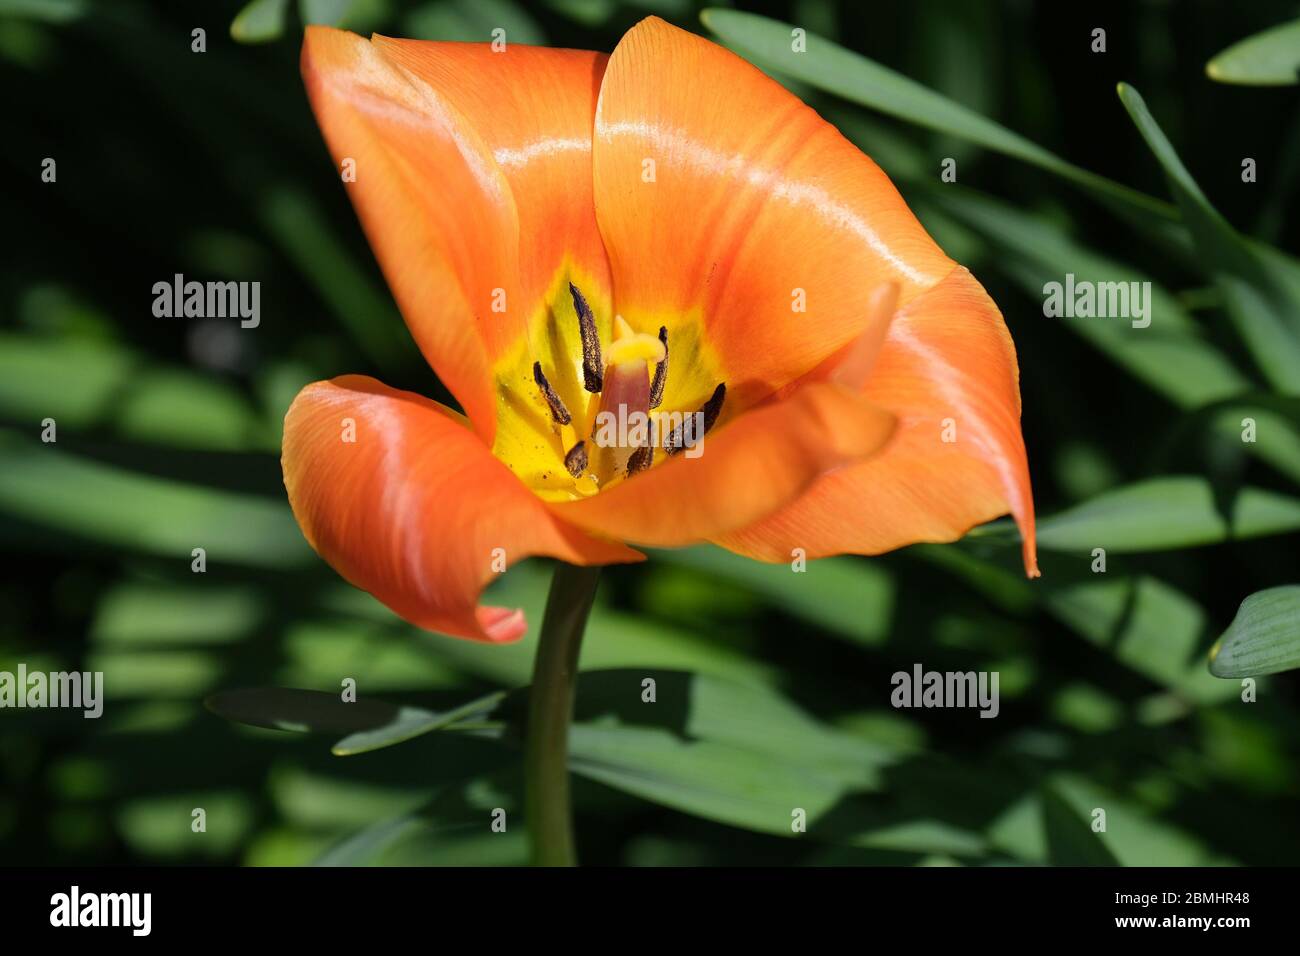 Primo piano di tulipano arancione appassito con balsami e polline Foto Stock